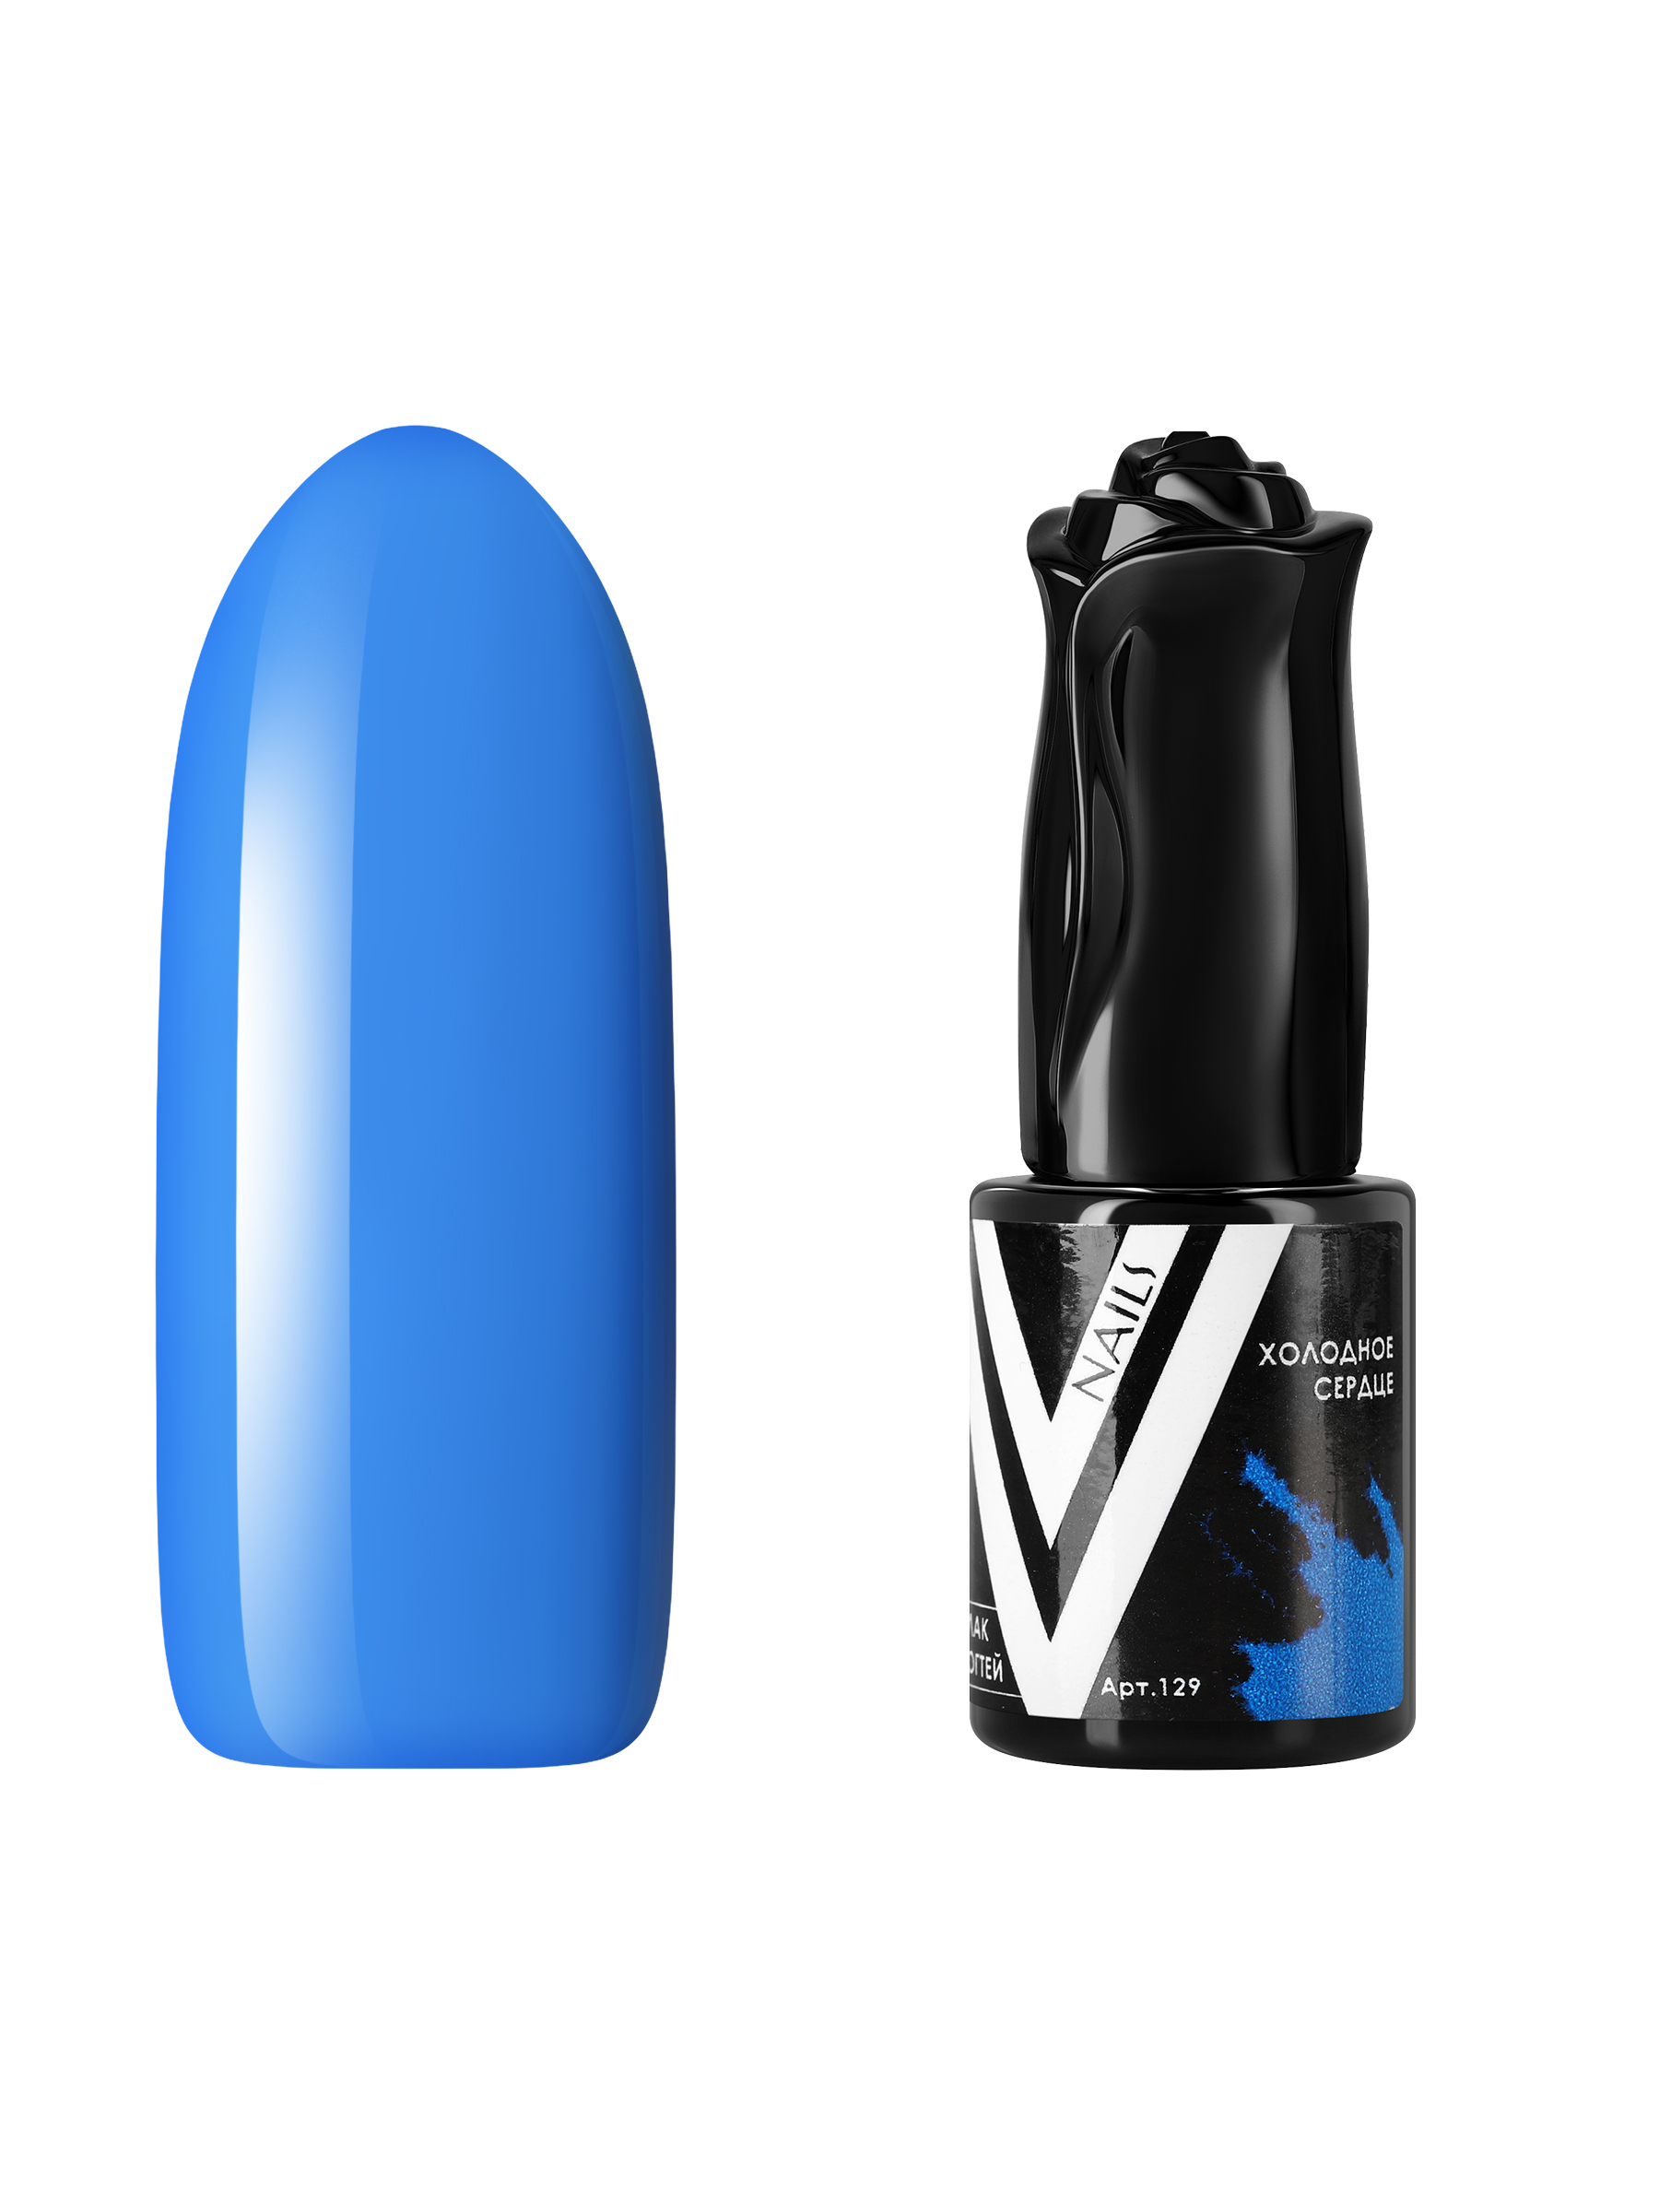 Гель-лак для ногтей Vogue Nails плотный самовыравнивающийся, яркий синий, 10 мл фотодерм cолнцезащитный крем гель m spf50 28546x темный оттенок 40 мл